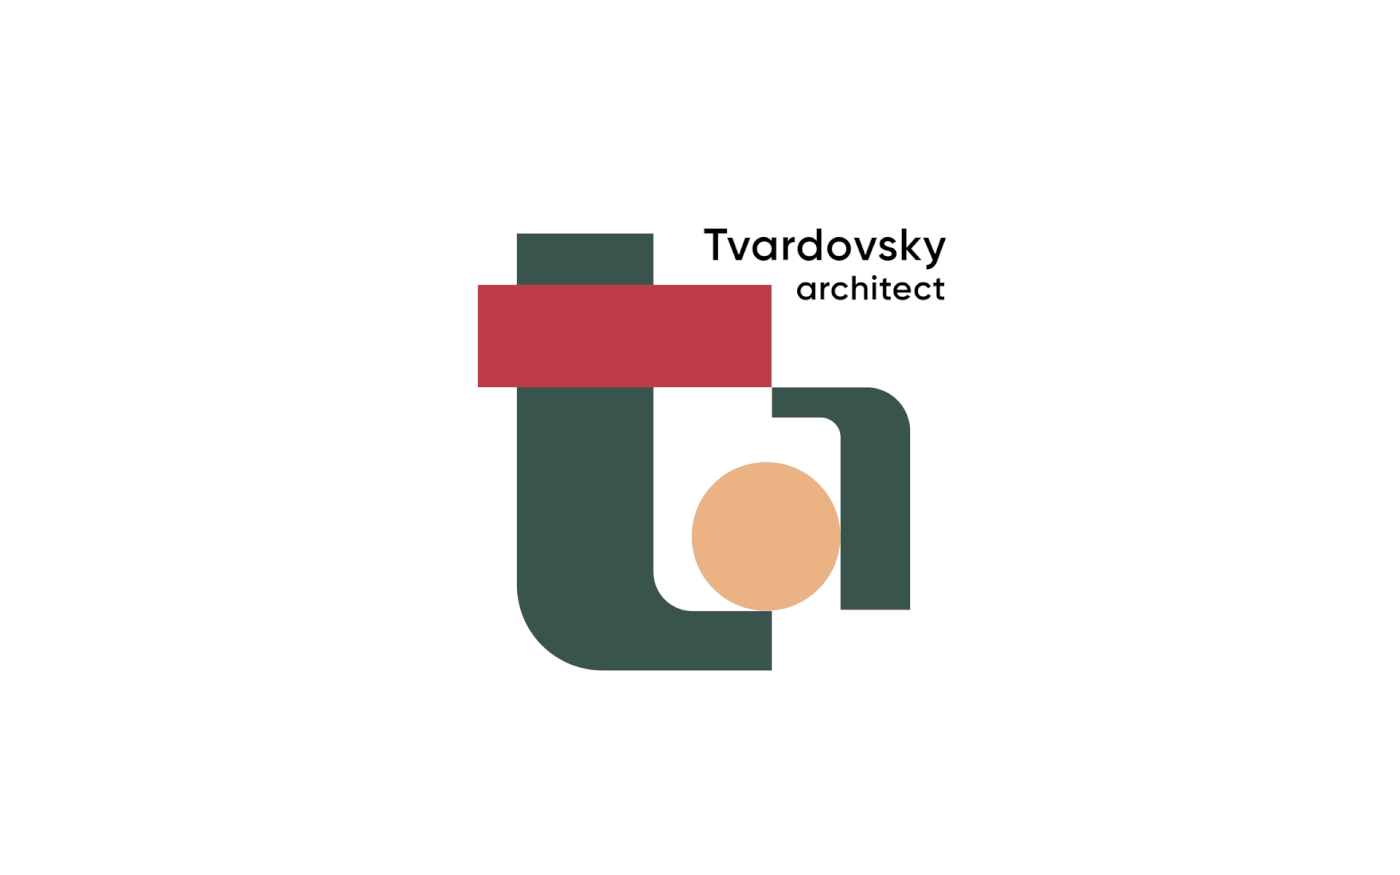 architect architecture identity logo Logotype